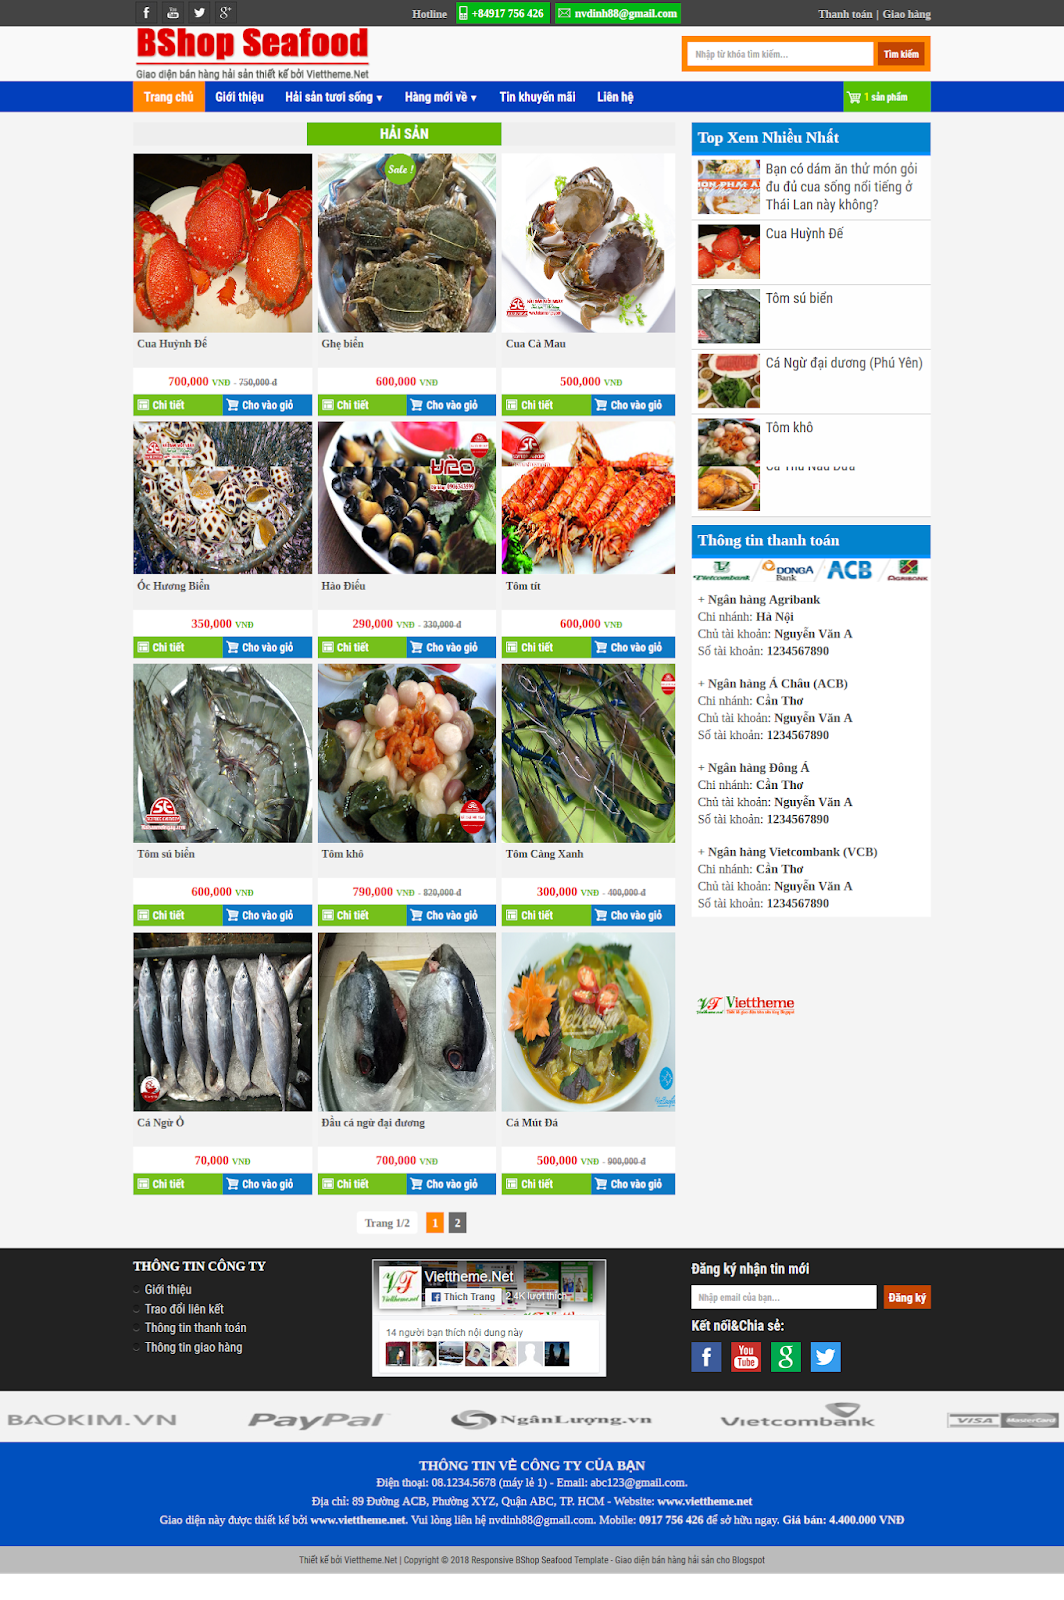 Bshop Seafood - Template diện bán hàng hải sản online dành cho Blogspot